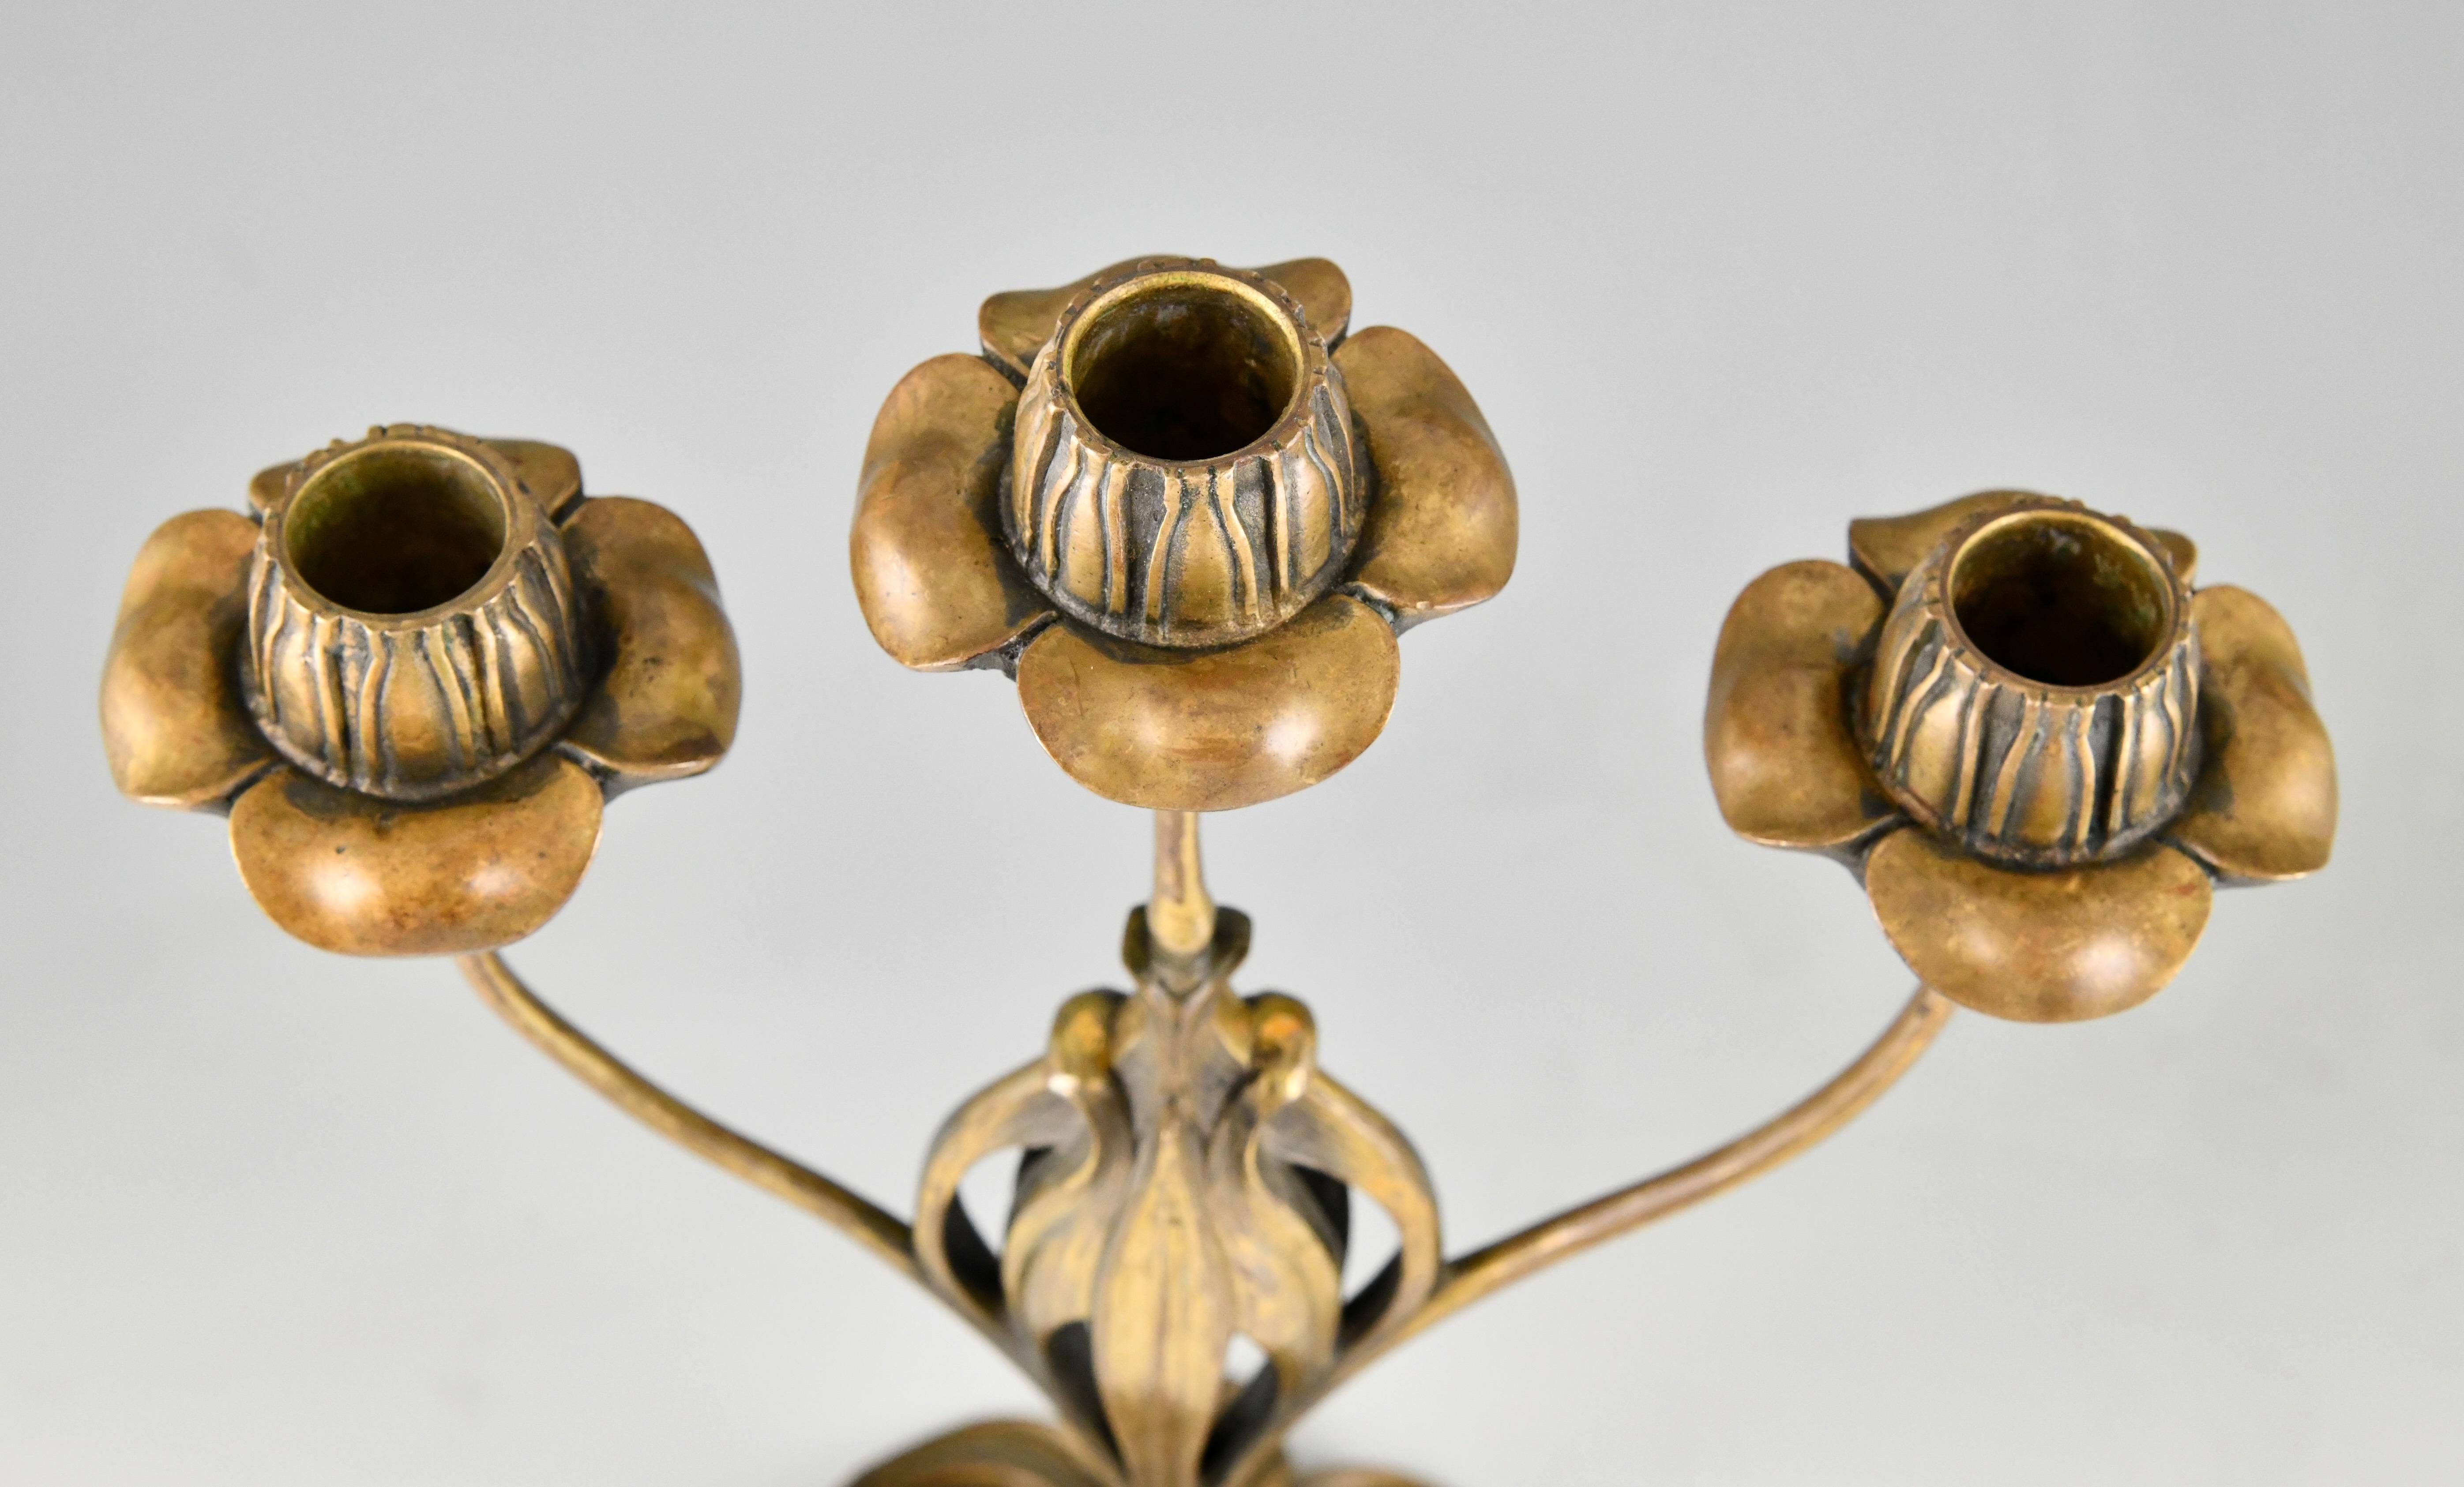 Pair of bronze Art Nouveau candelabra with floral design by Georges de Feure 1